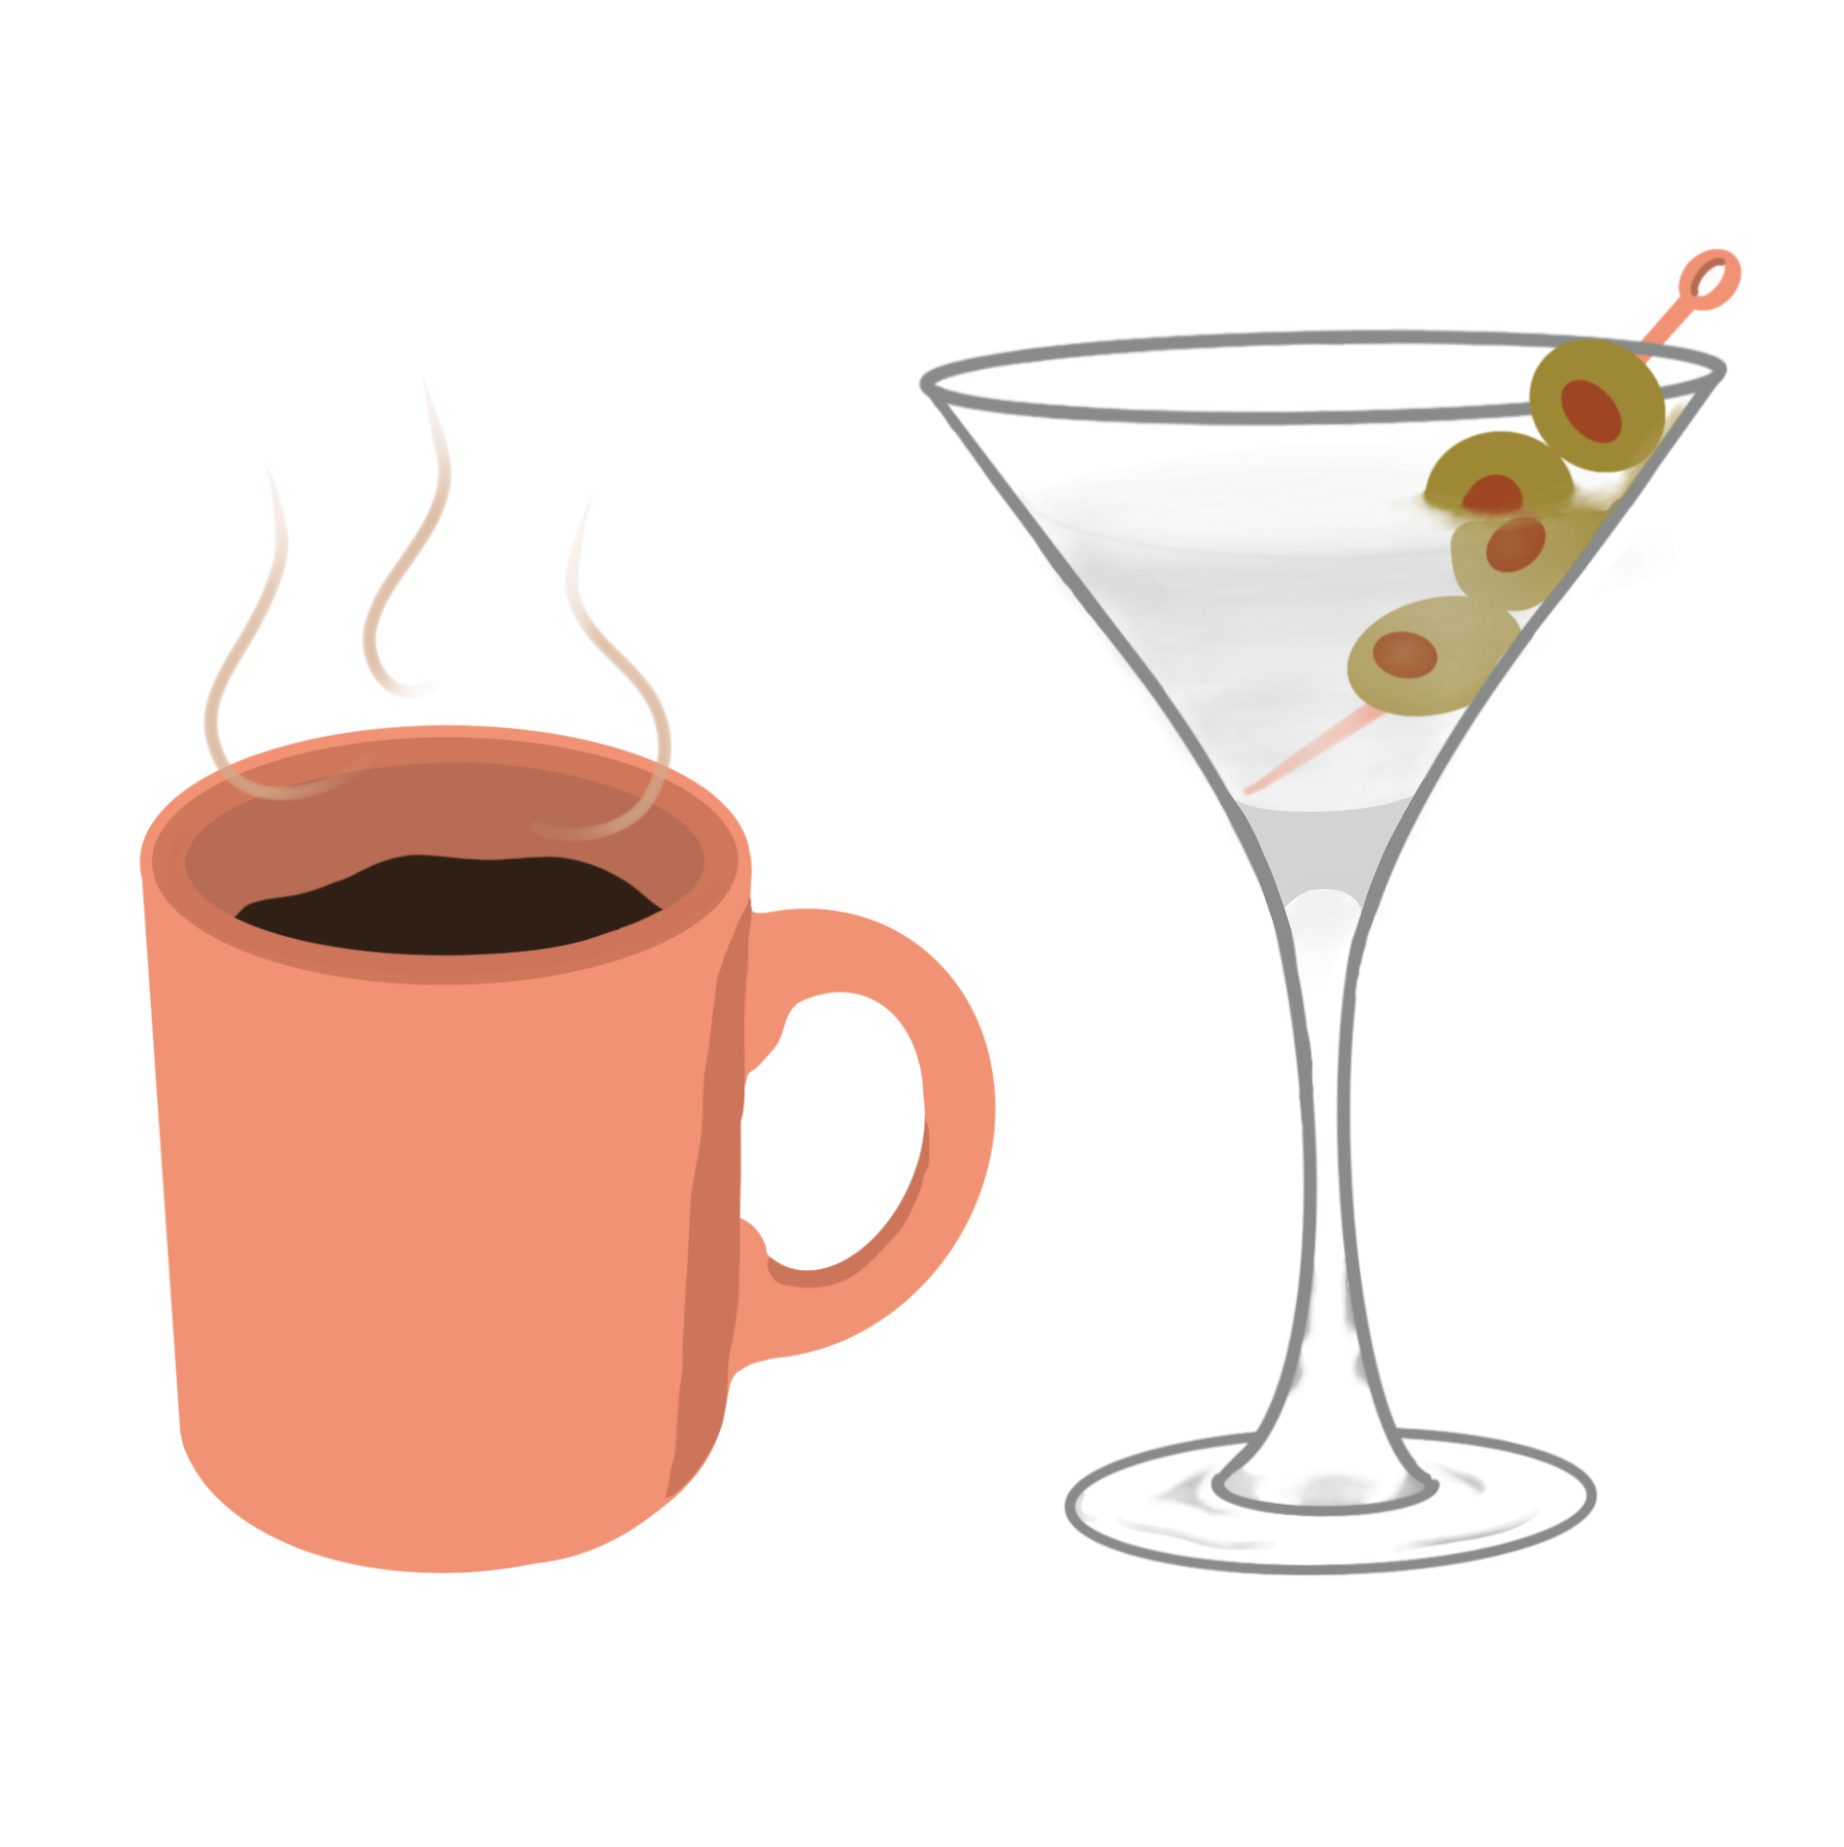 mug of coffee and martini